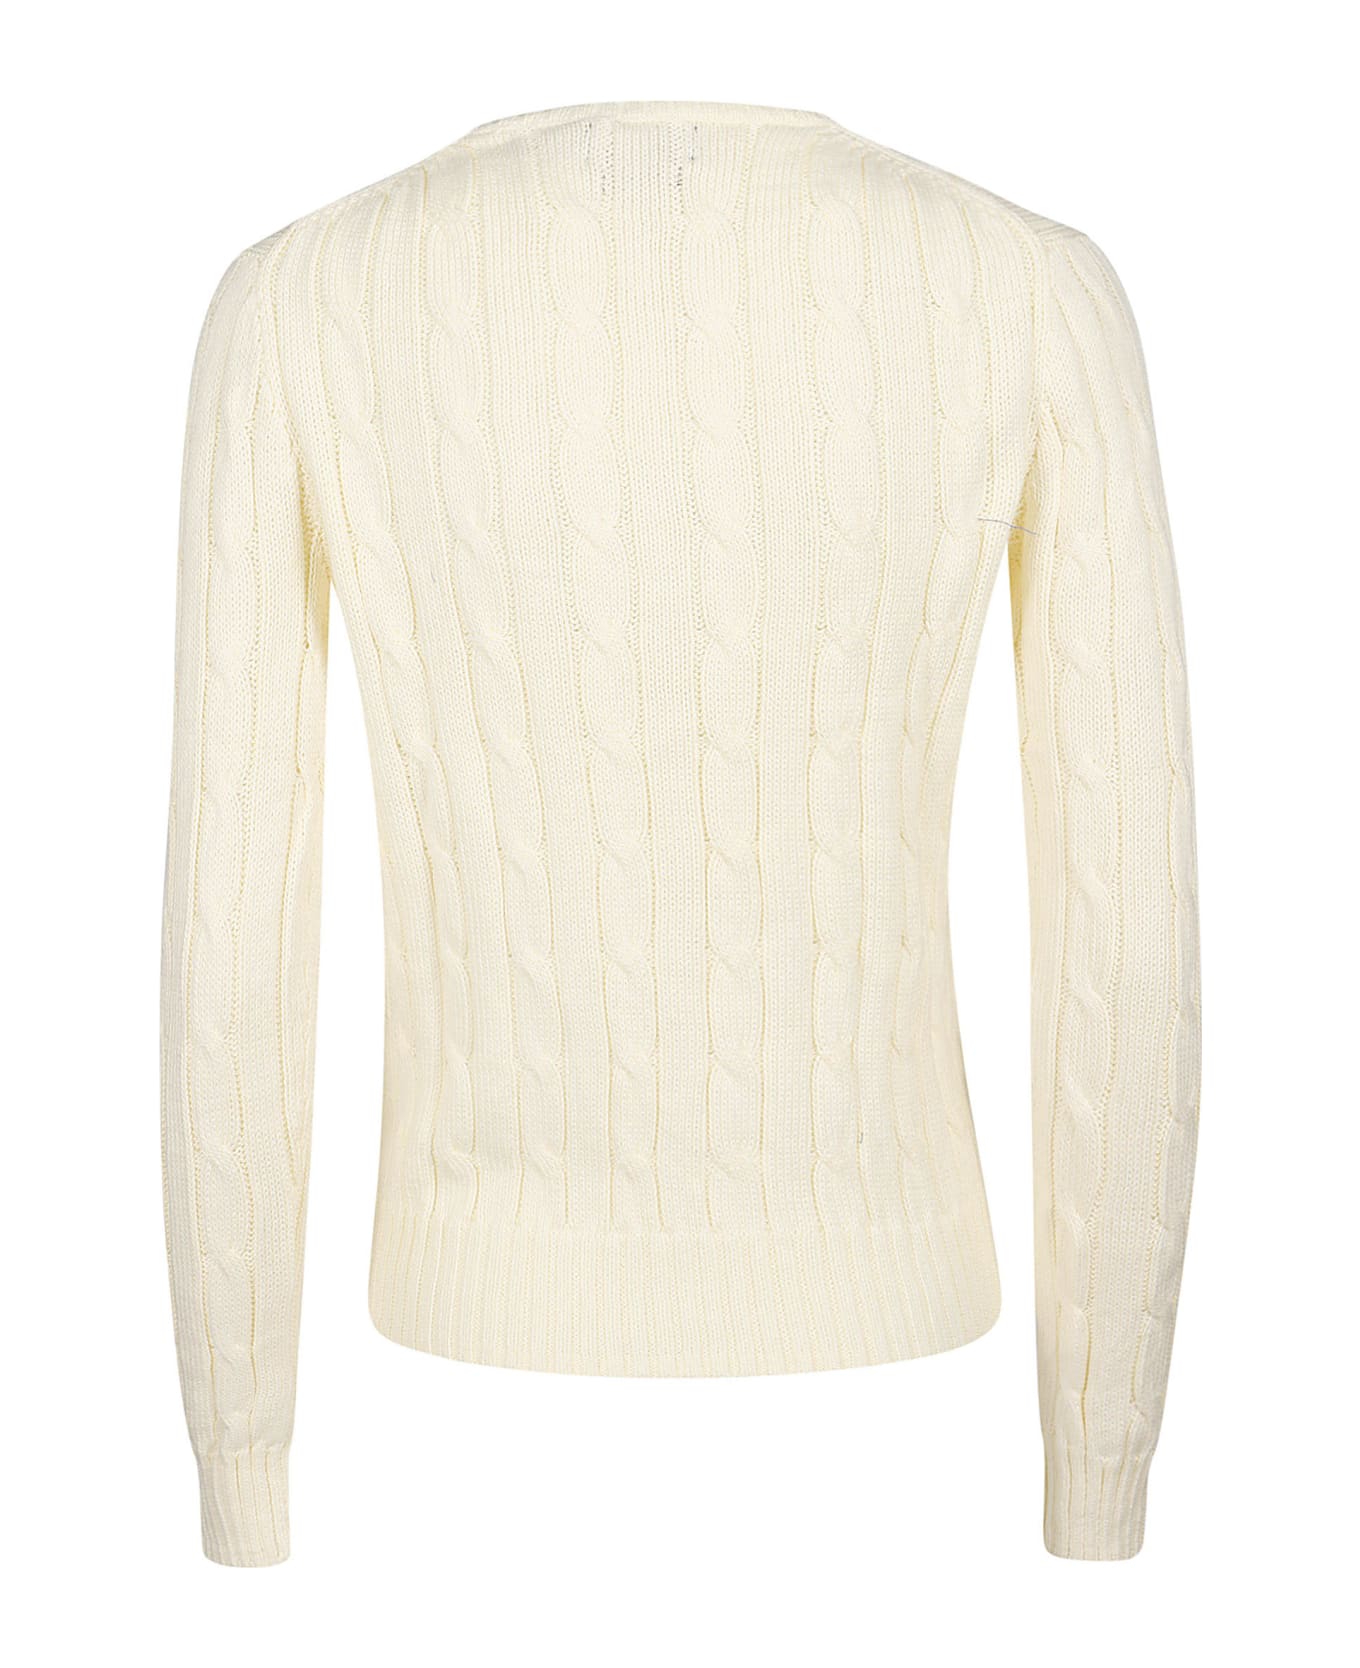 Polo Ralph Lauren Julianna Sweater - Cream ニットウェア